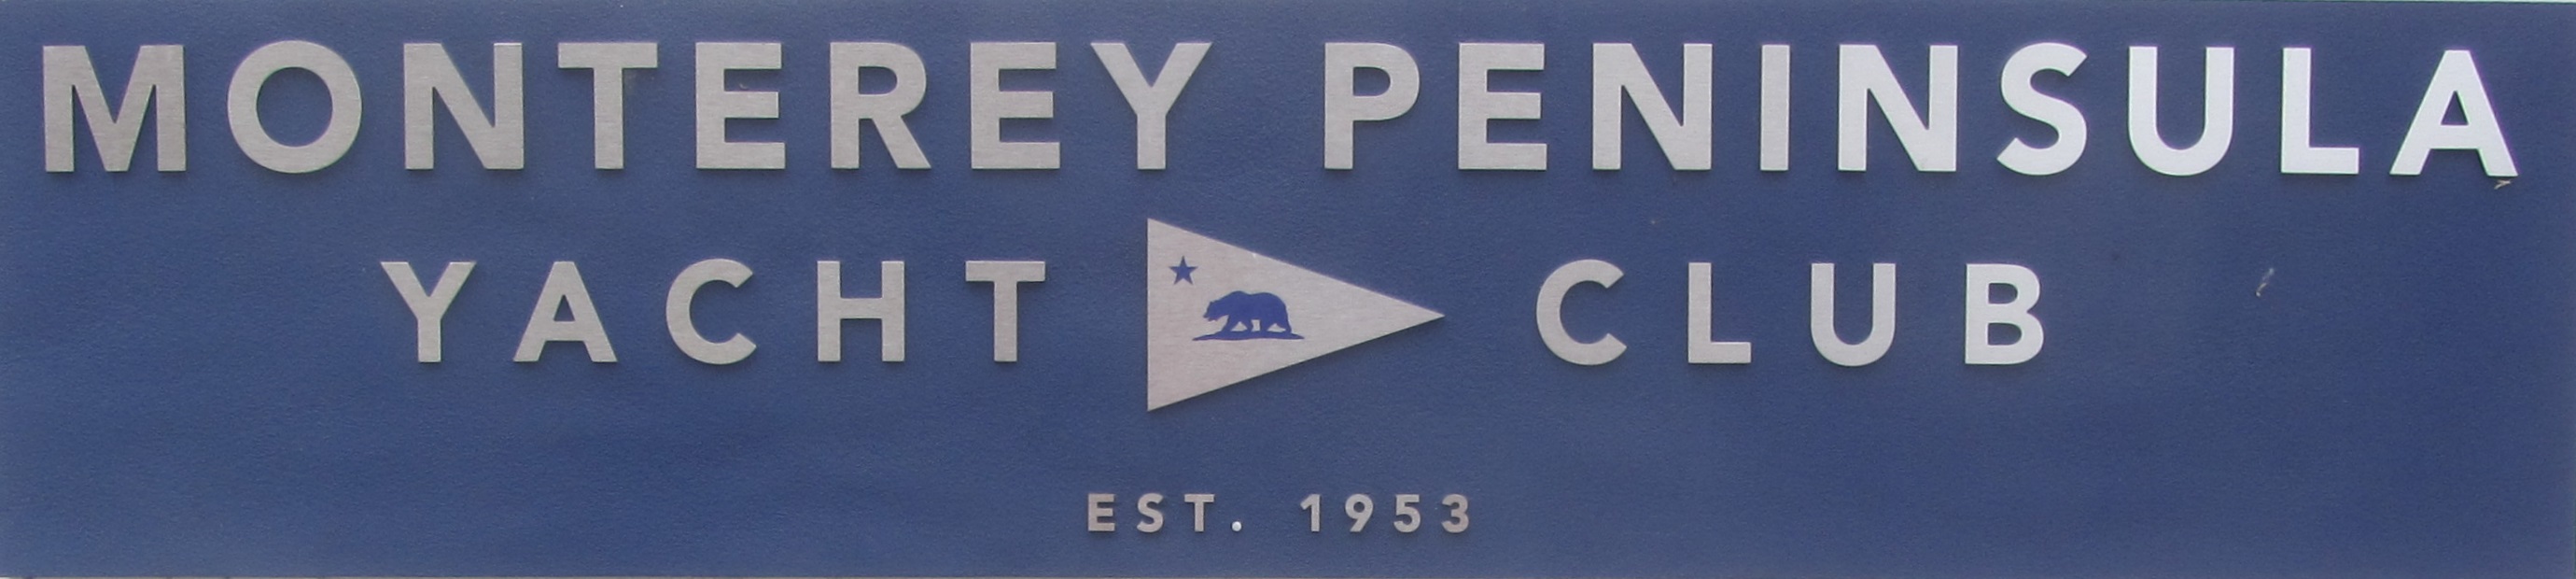 Monterey Peninsula Yacht Club